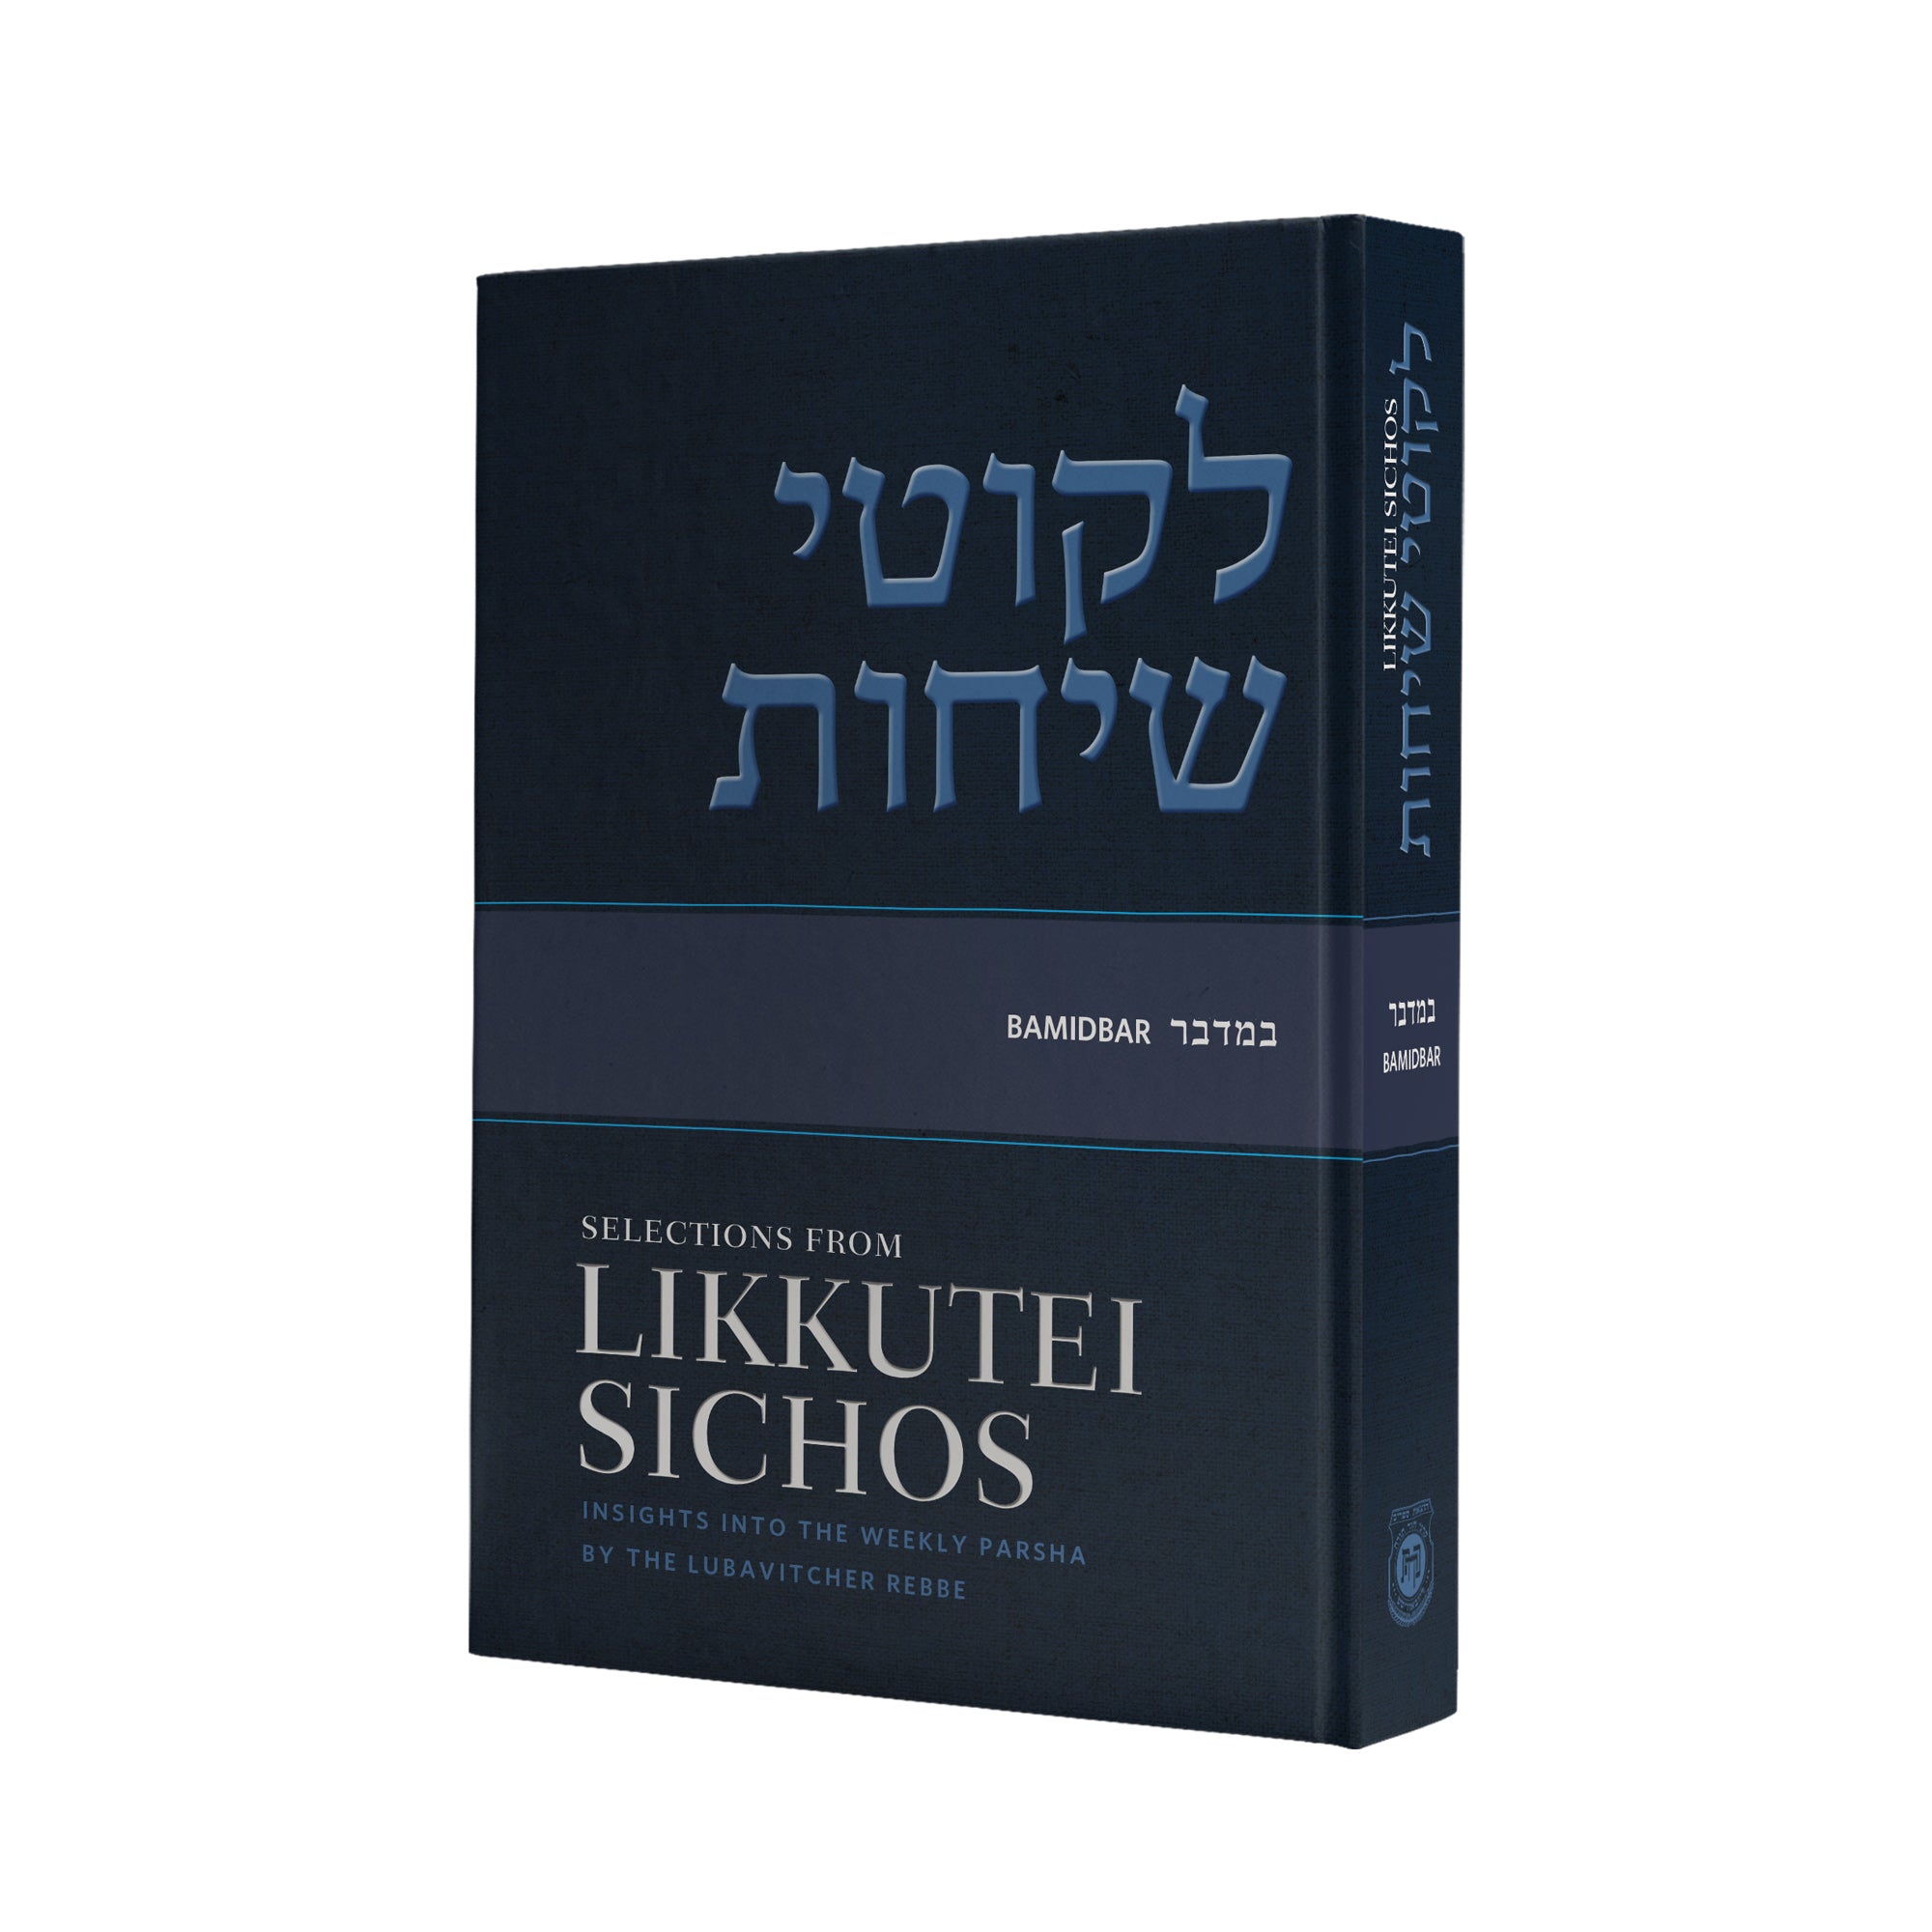 Likkutei Sichos, Volume 4 (Bamidbar)